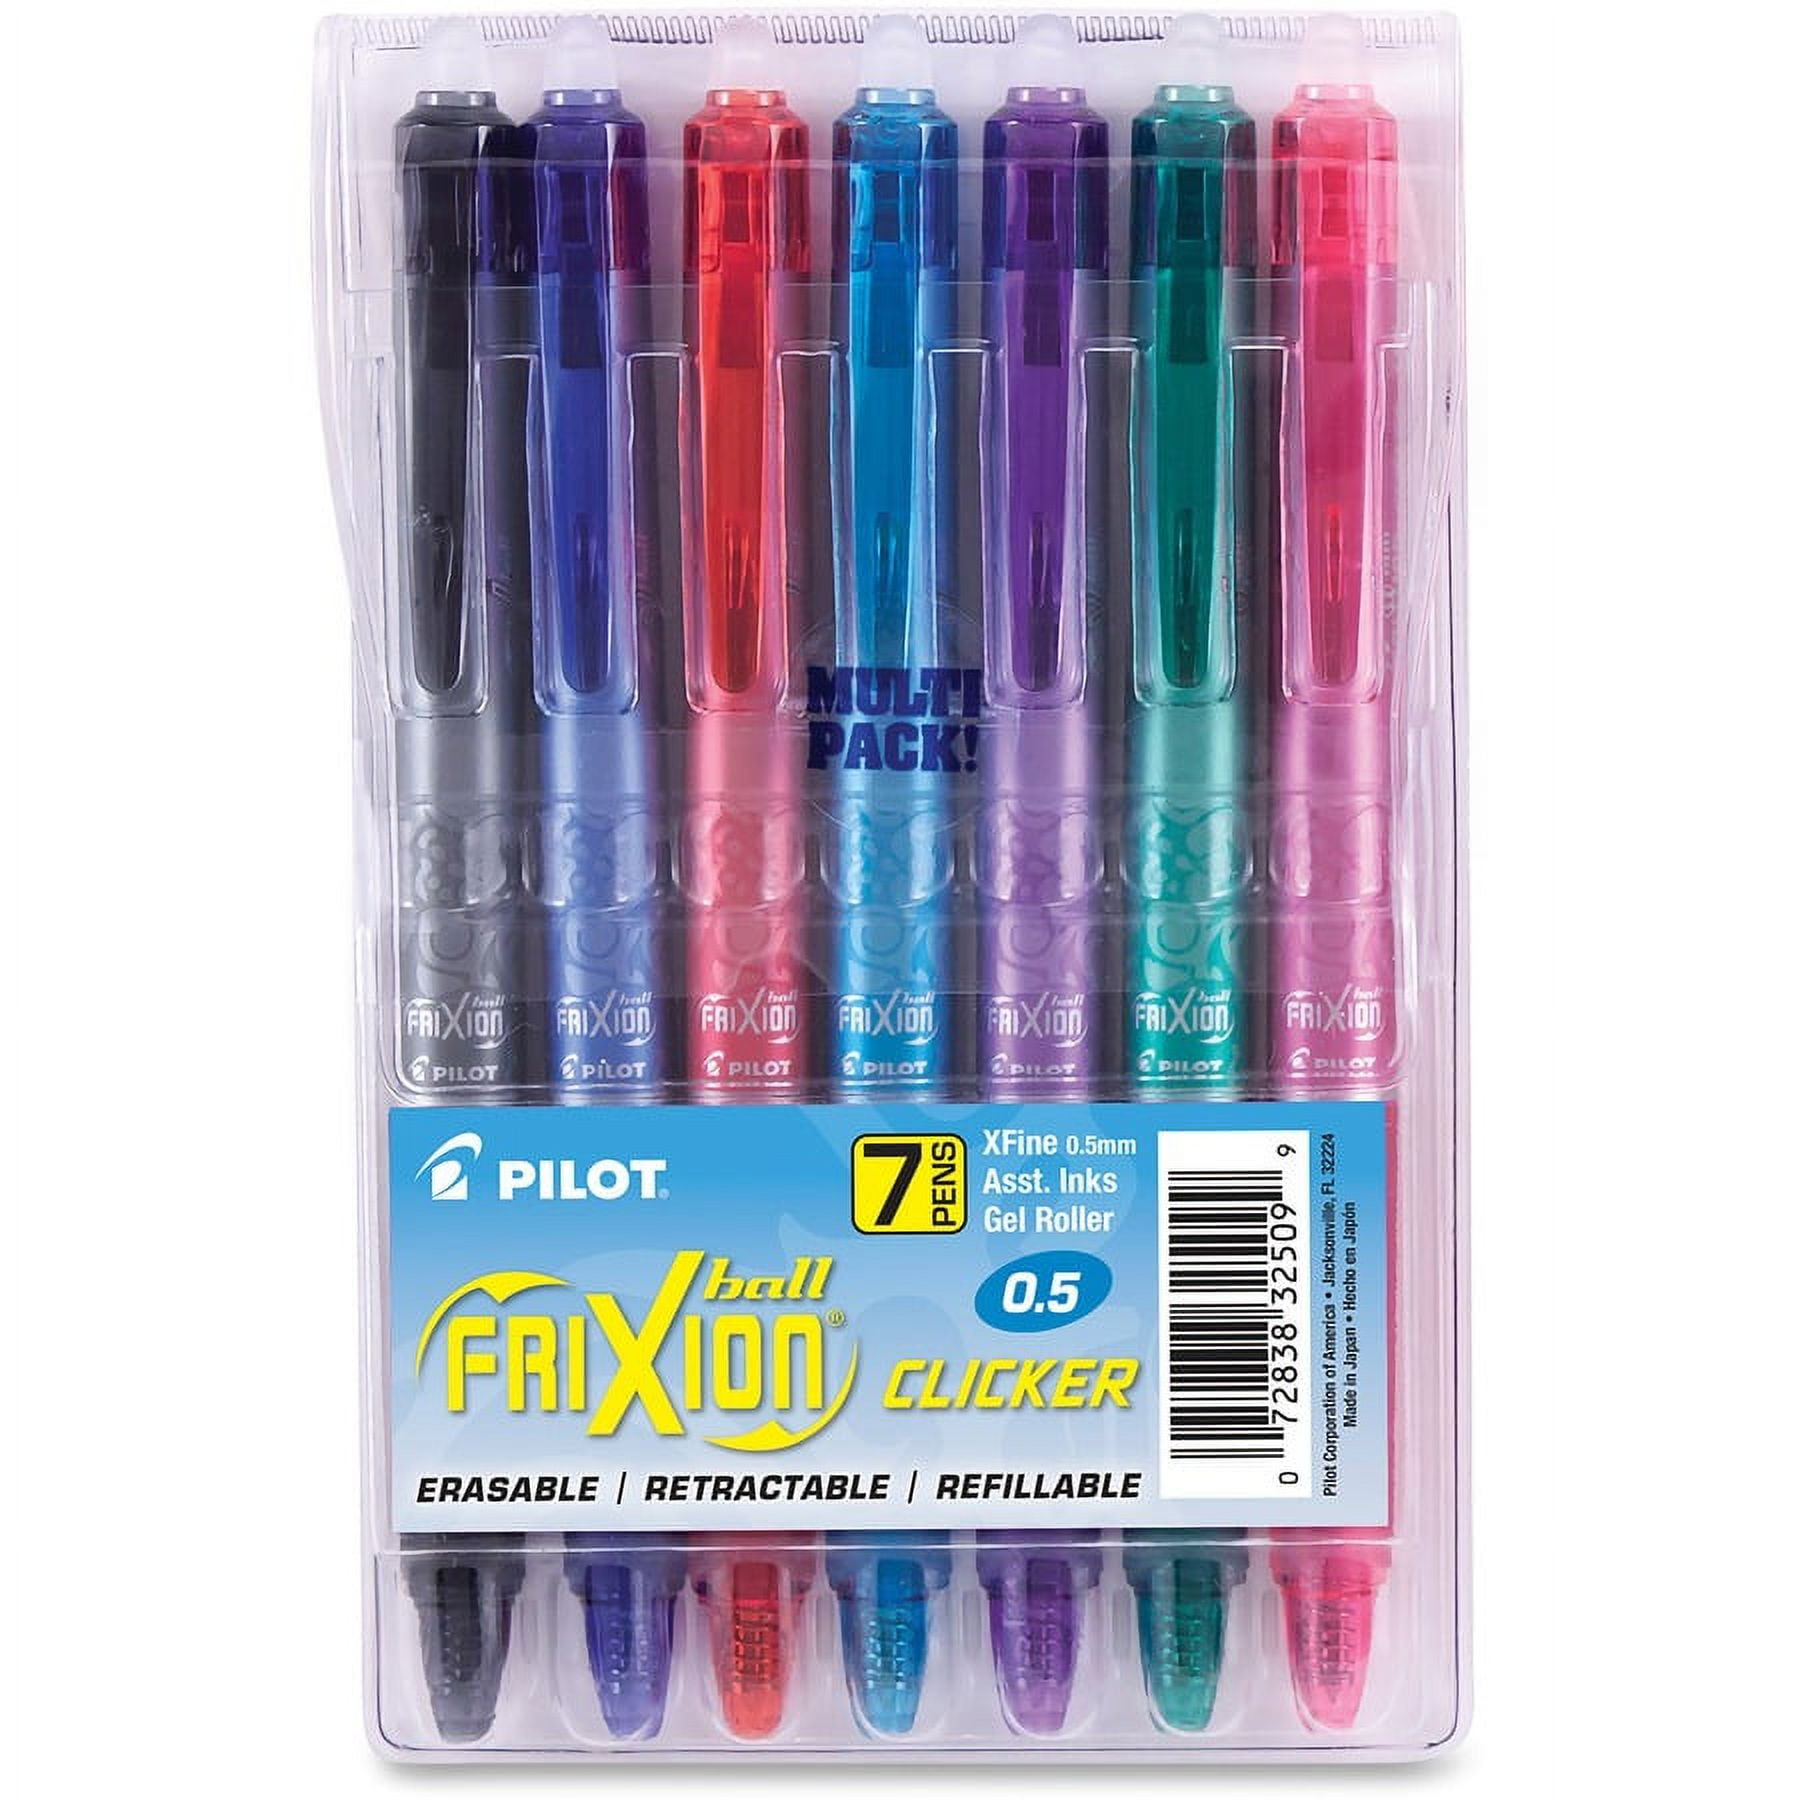 FriXion Clicker Erasable Gel Pen by Pilot® PIL31451